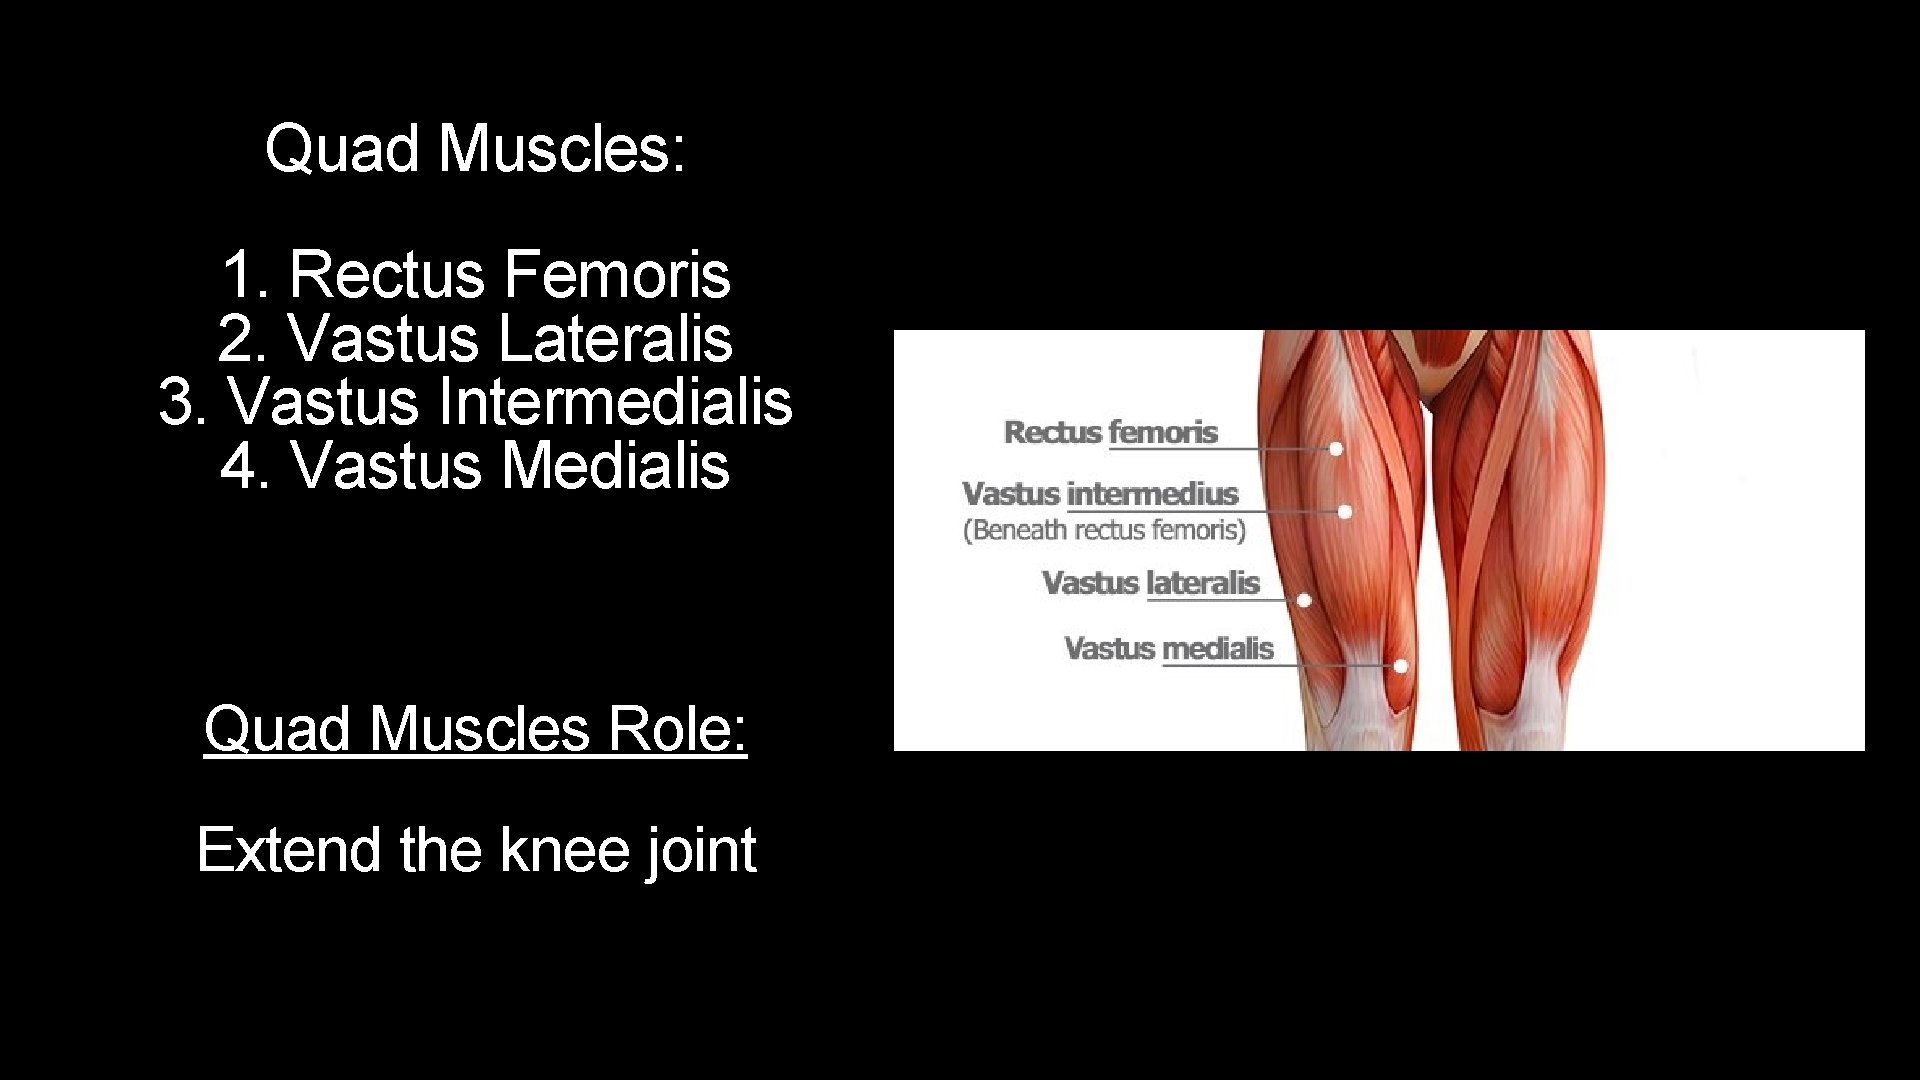 Quad Muscles: 1. Rectus Femoris 2. Vastus Lateralis 3. Vastus Intermedialis 4. Vastus Medialis